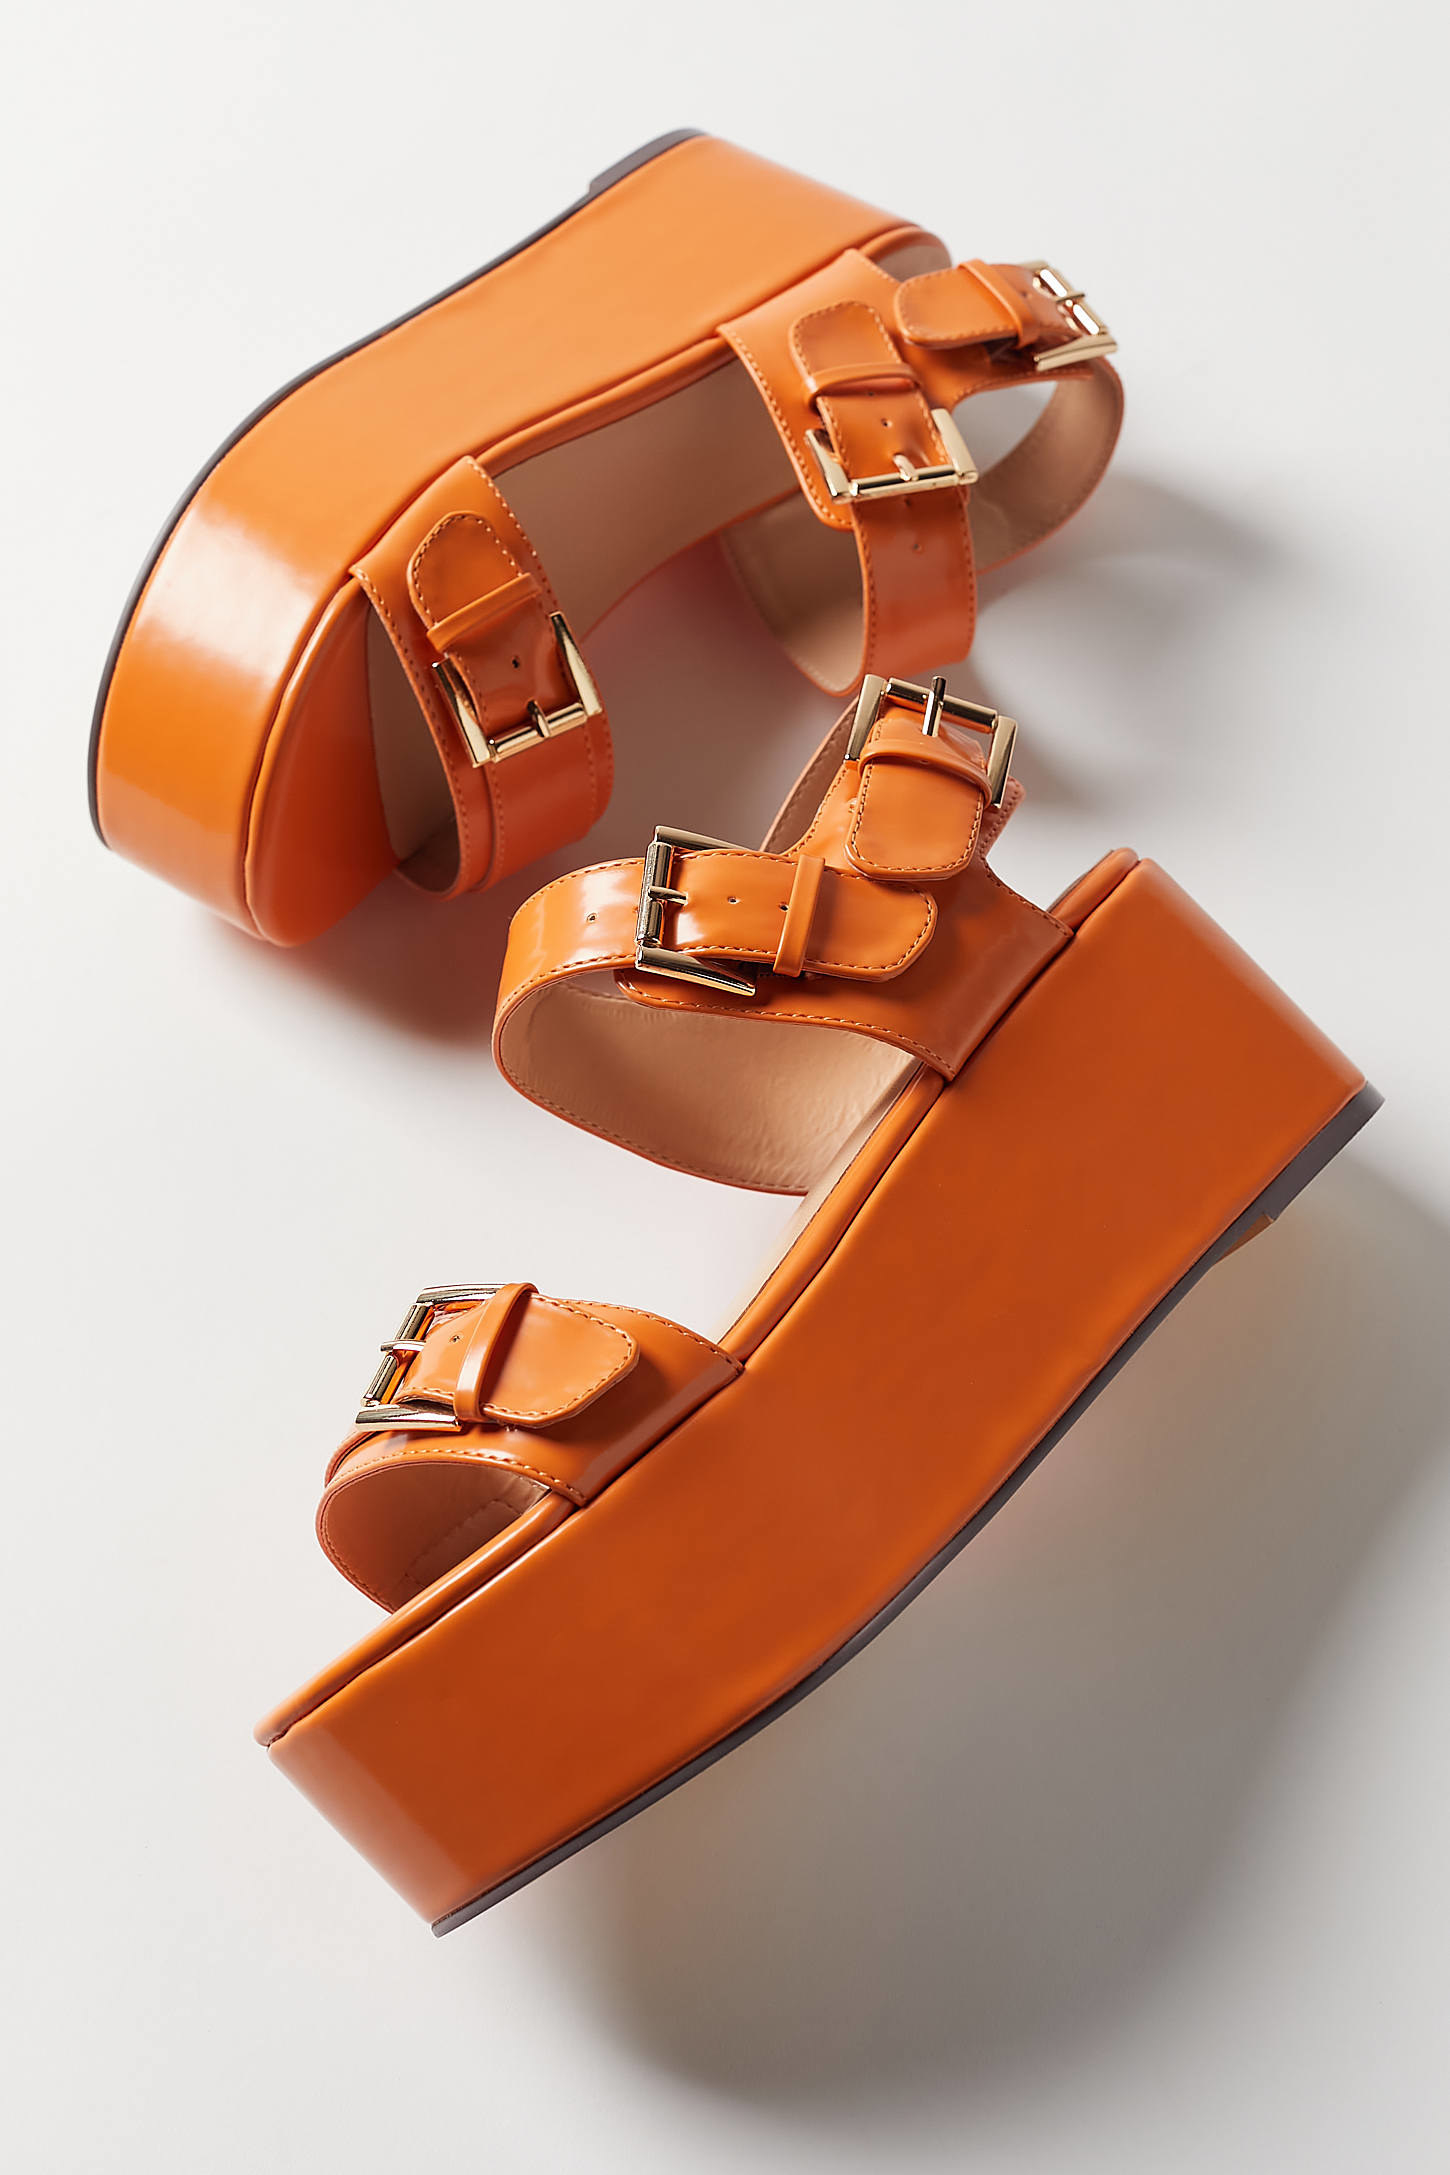 The sandals in orange 